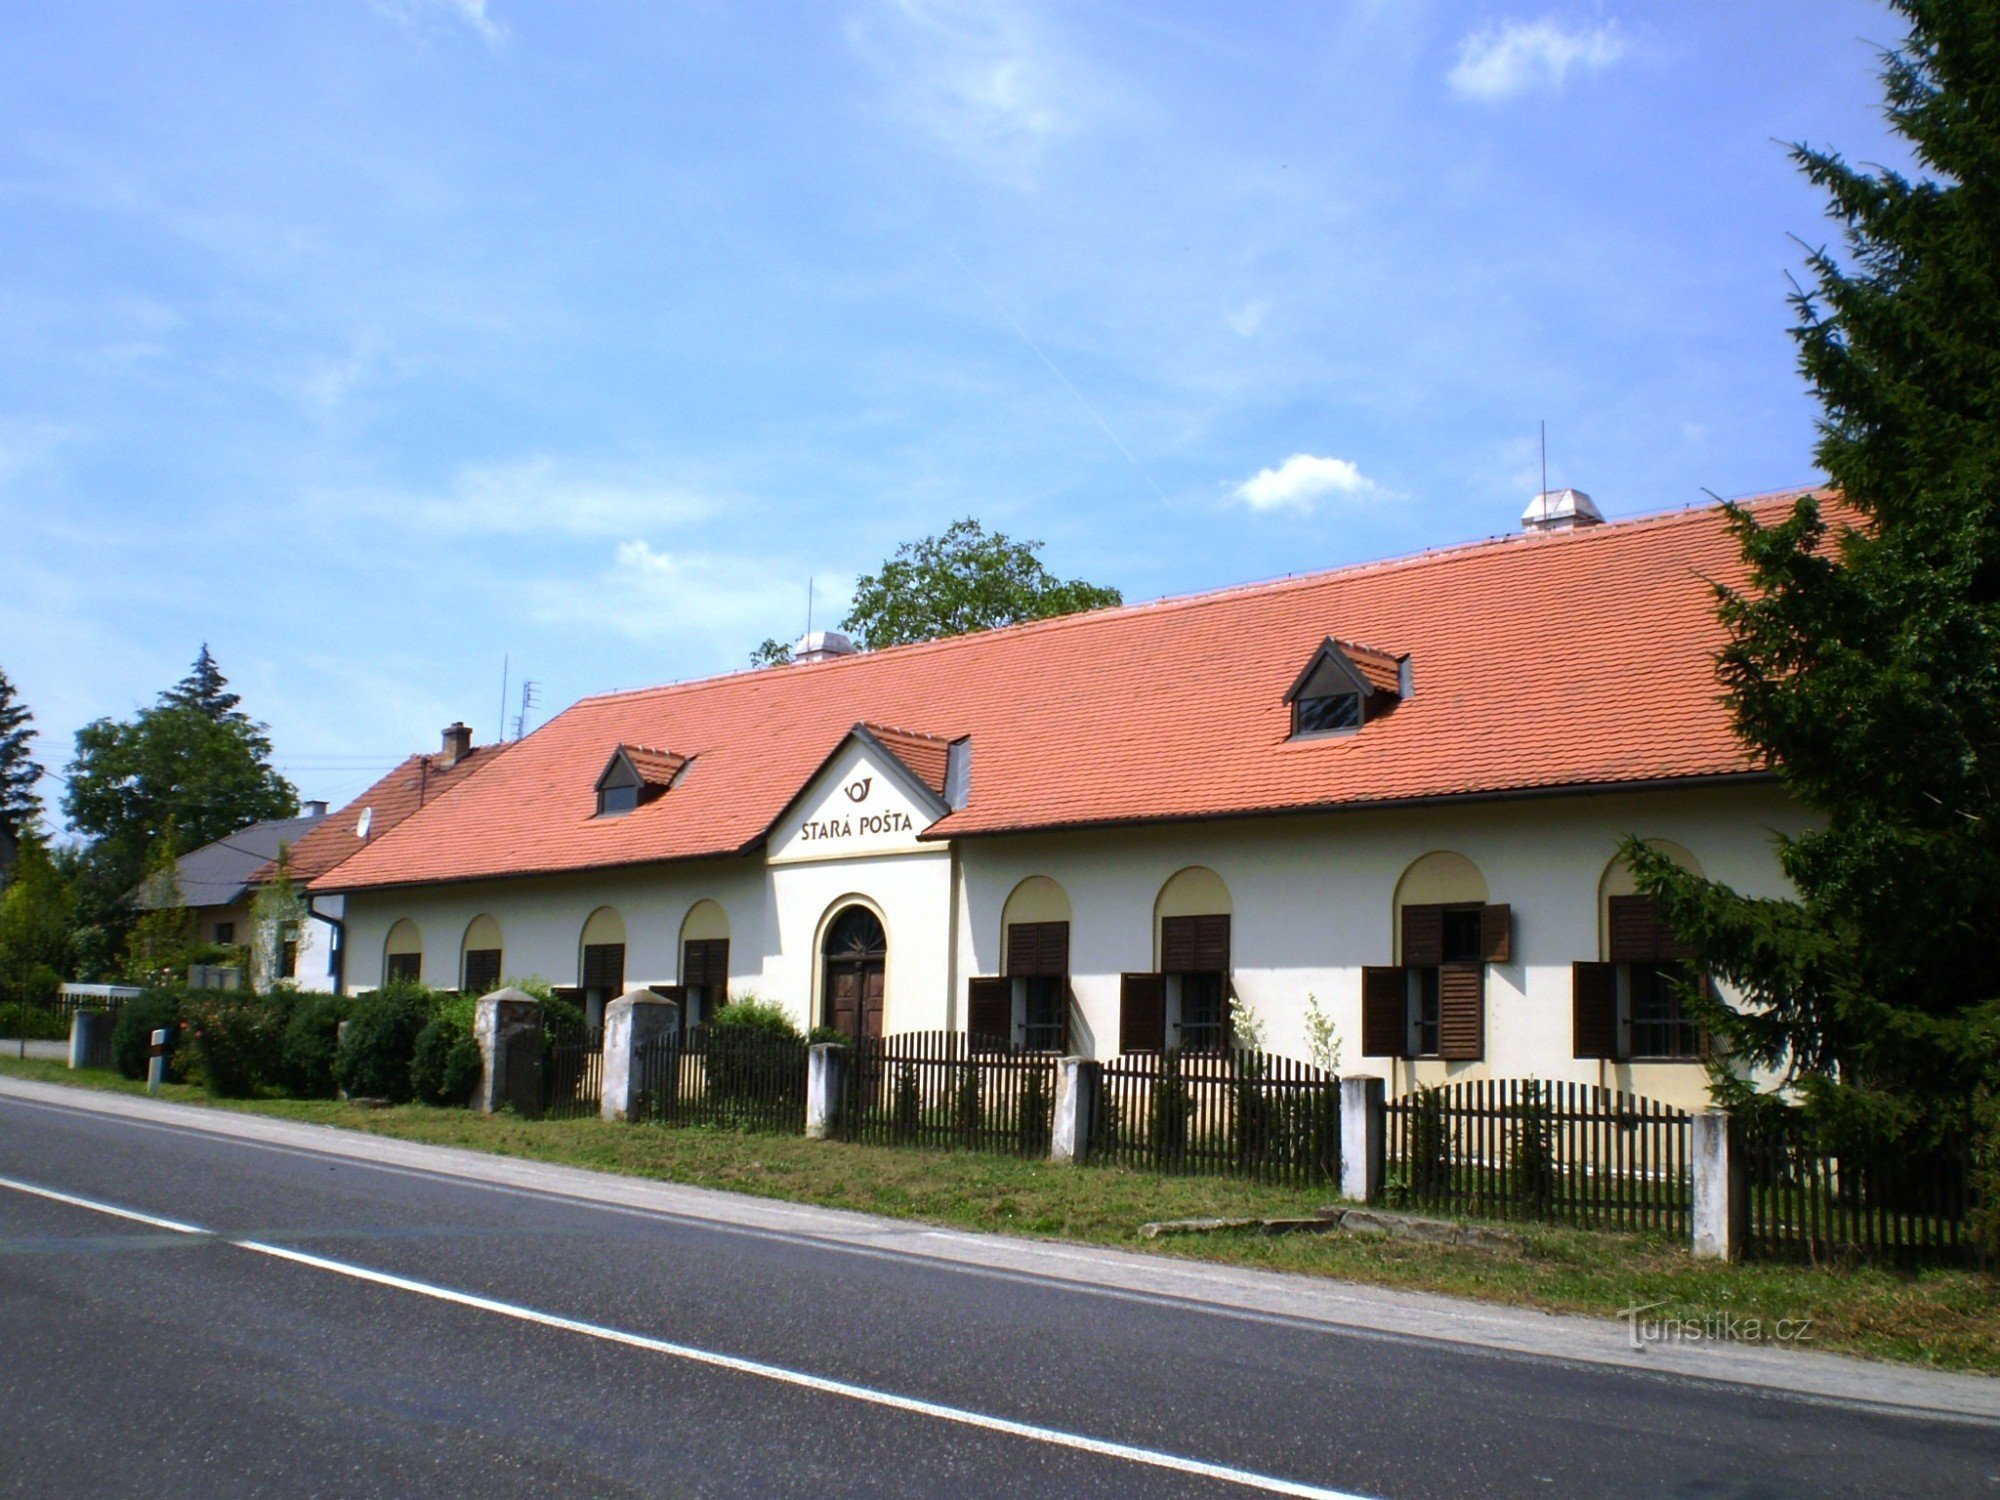 Стара пошта (біля старої дороги Брно-Вишков)